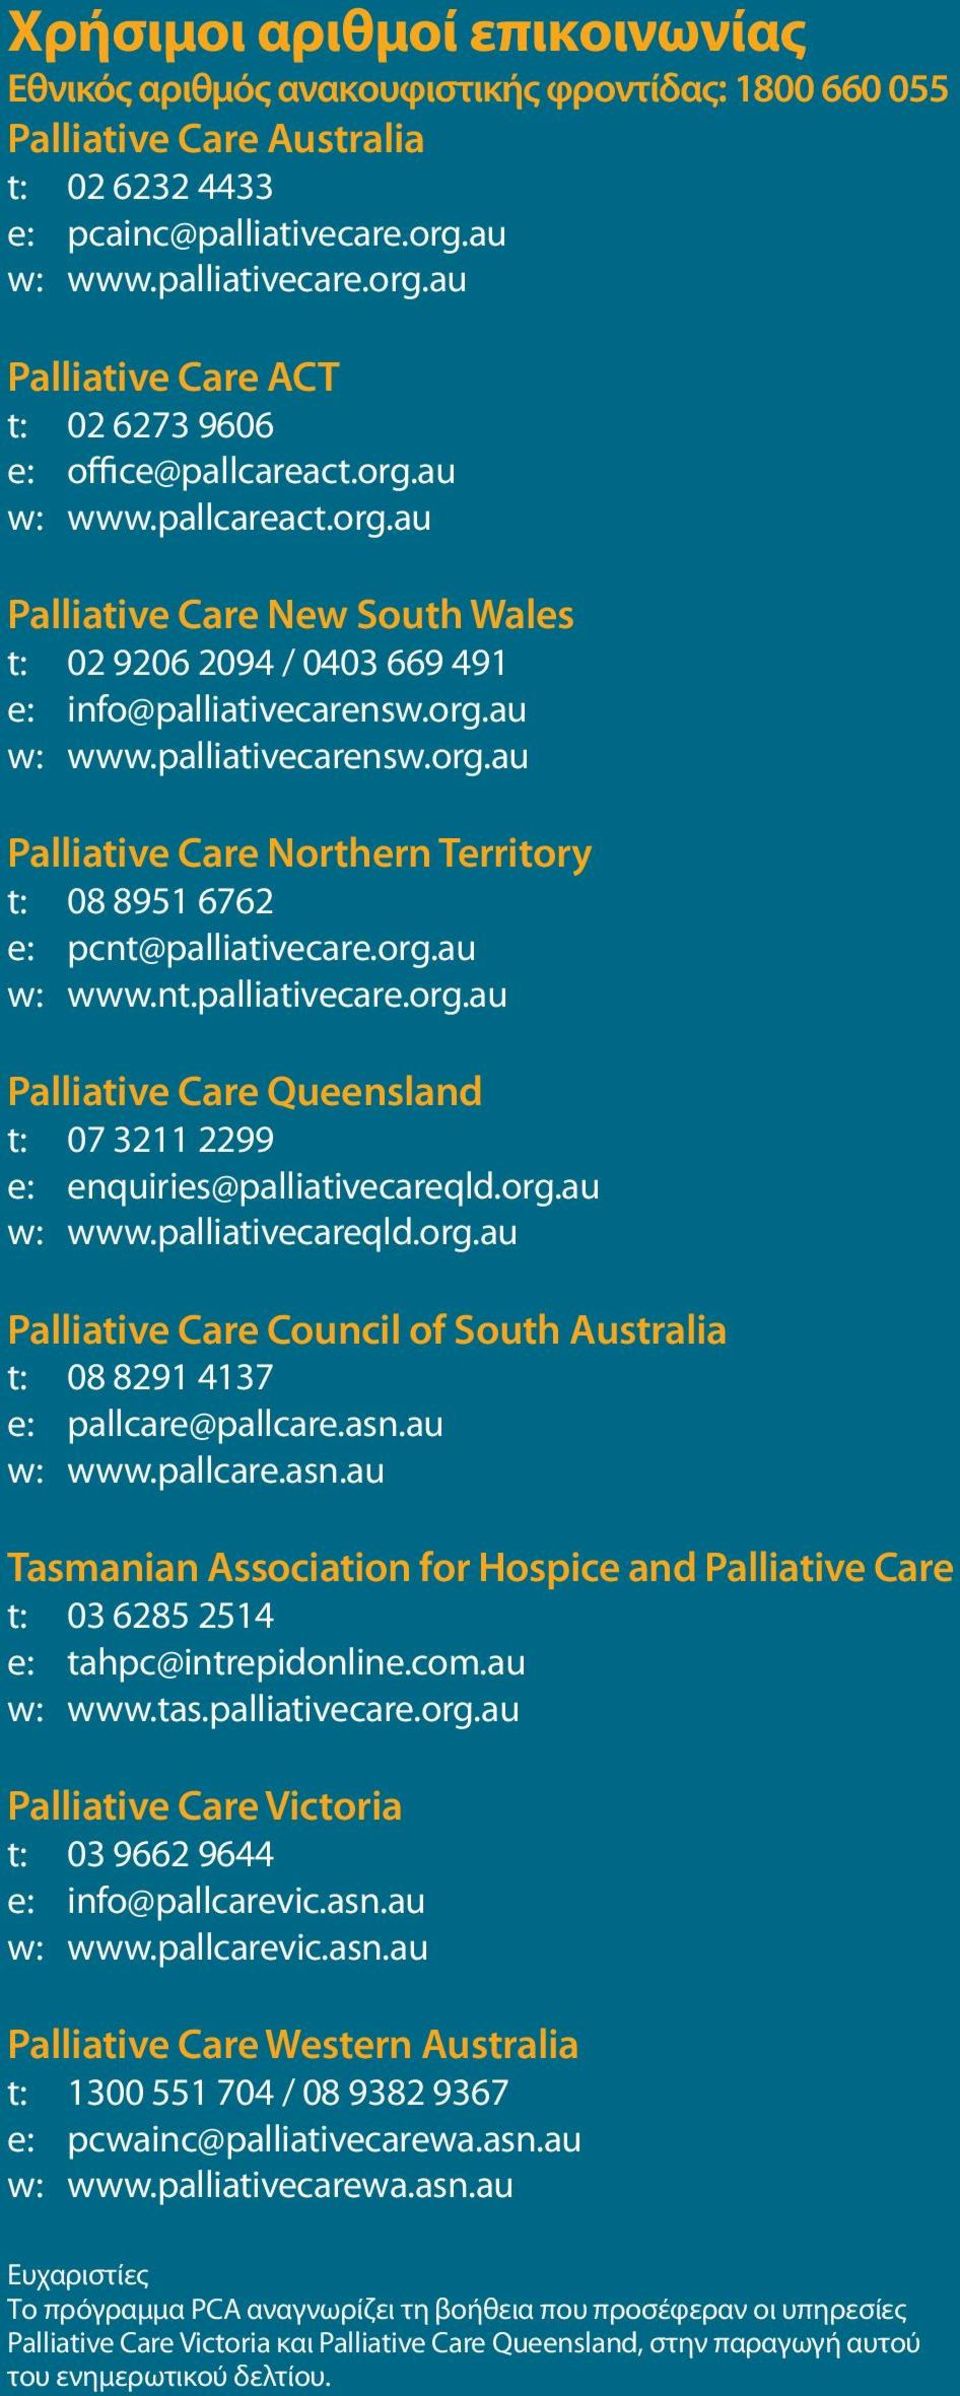 org.au w: www.palliativecarensw.org.au Palliative Care Northern Territory t: 08 8951 6762 e: pcnt@palliativecare.org.au w: www.nt.palliativecare.org.au Palliative Care Queensland t: 07 3211 2299 e: enquiries@palliativecareqld.